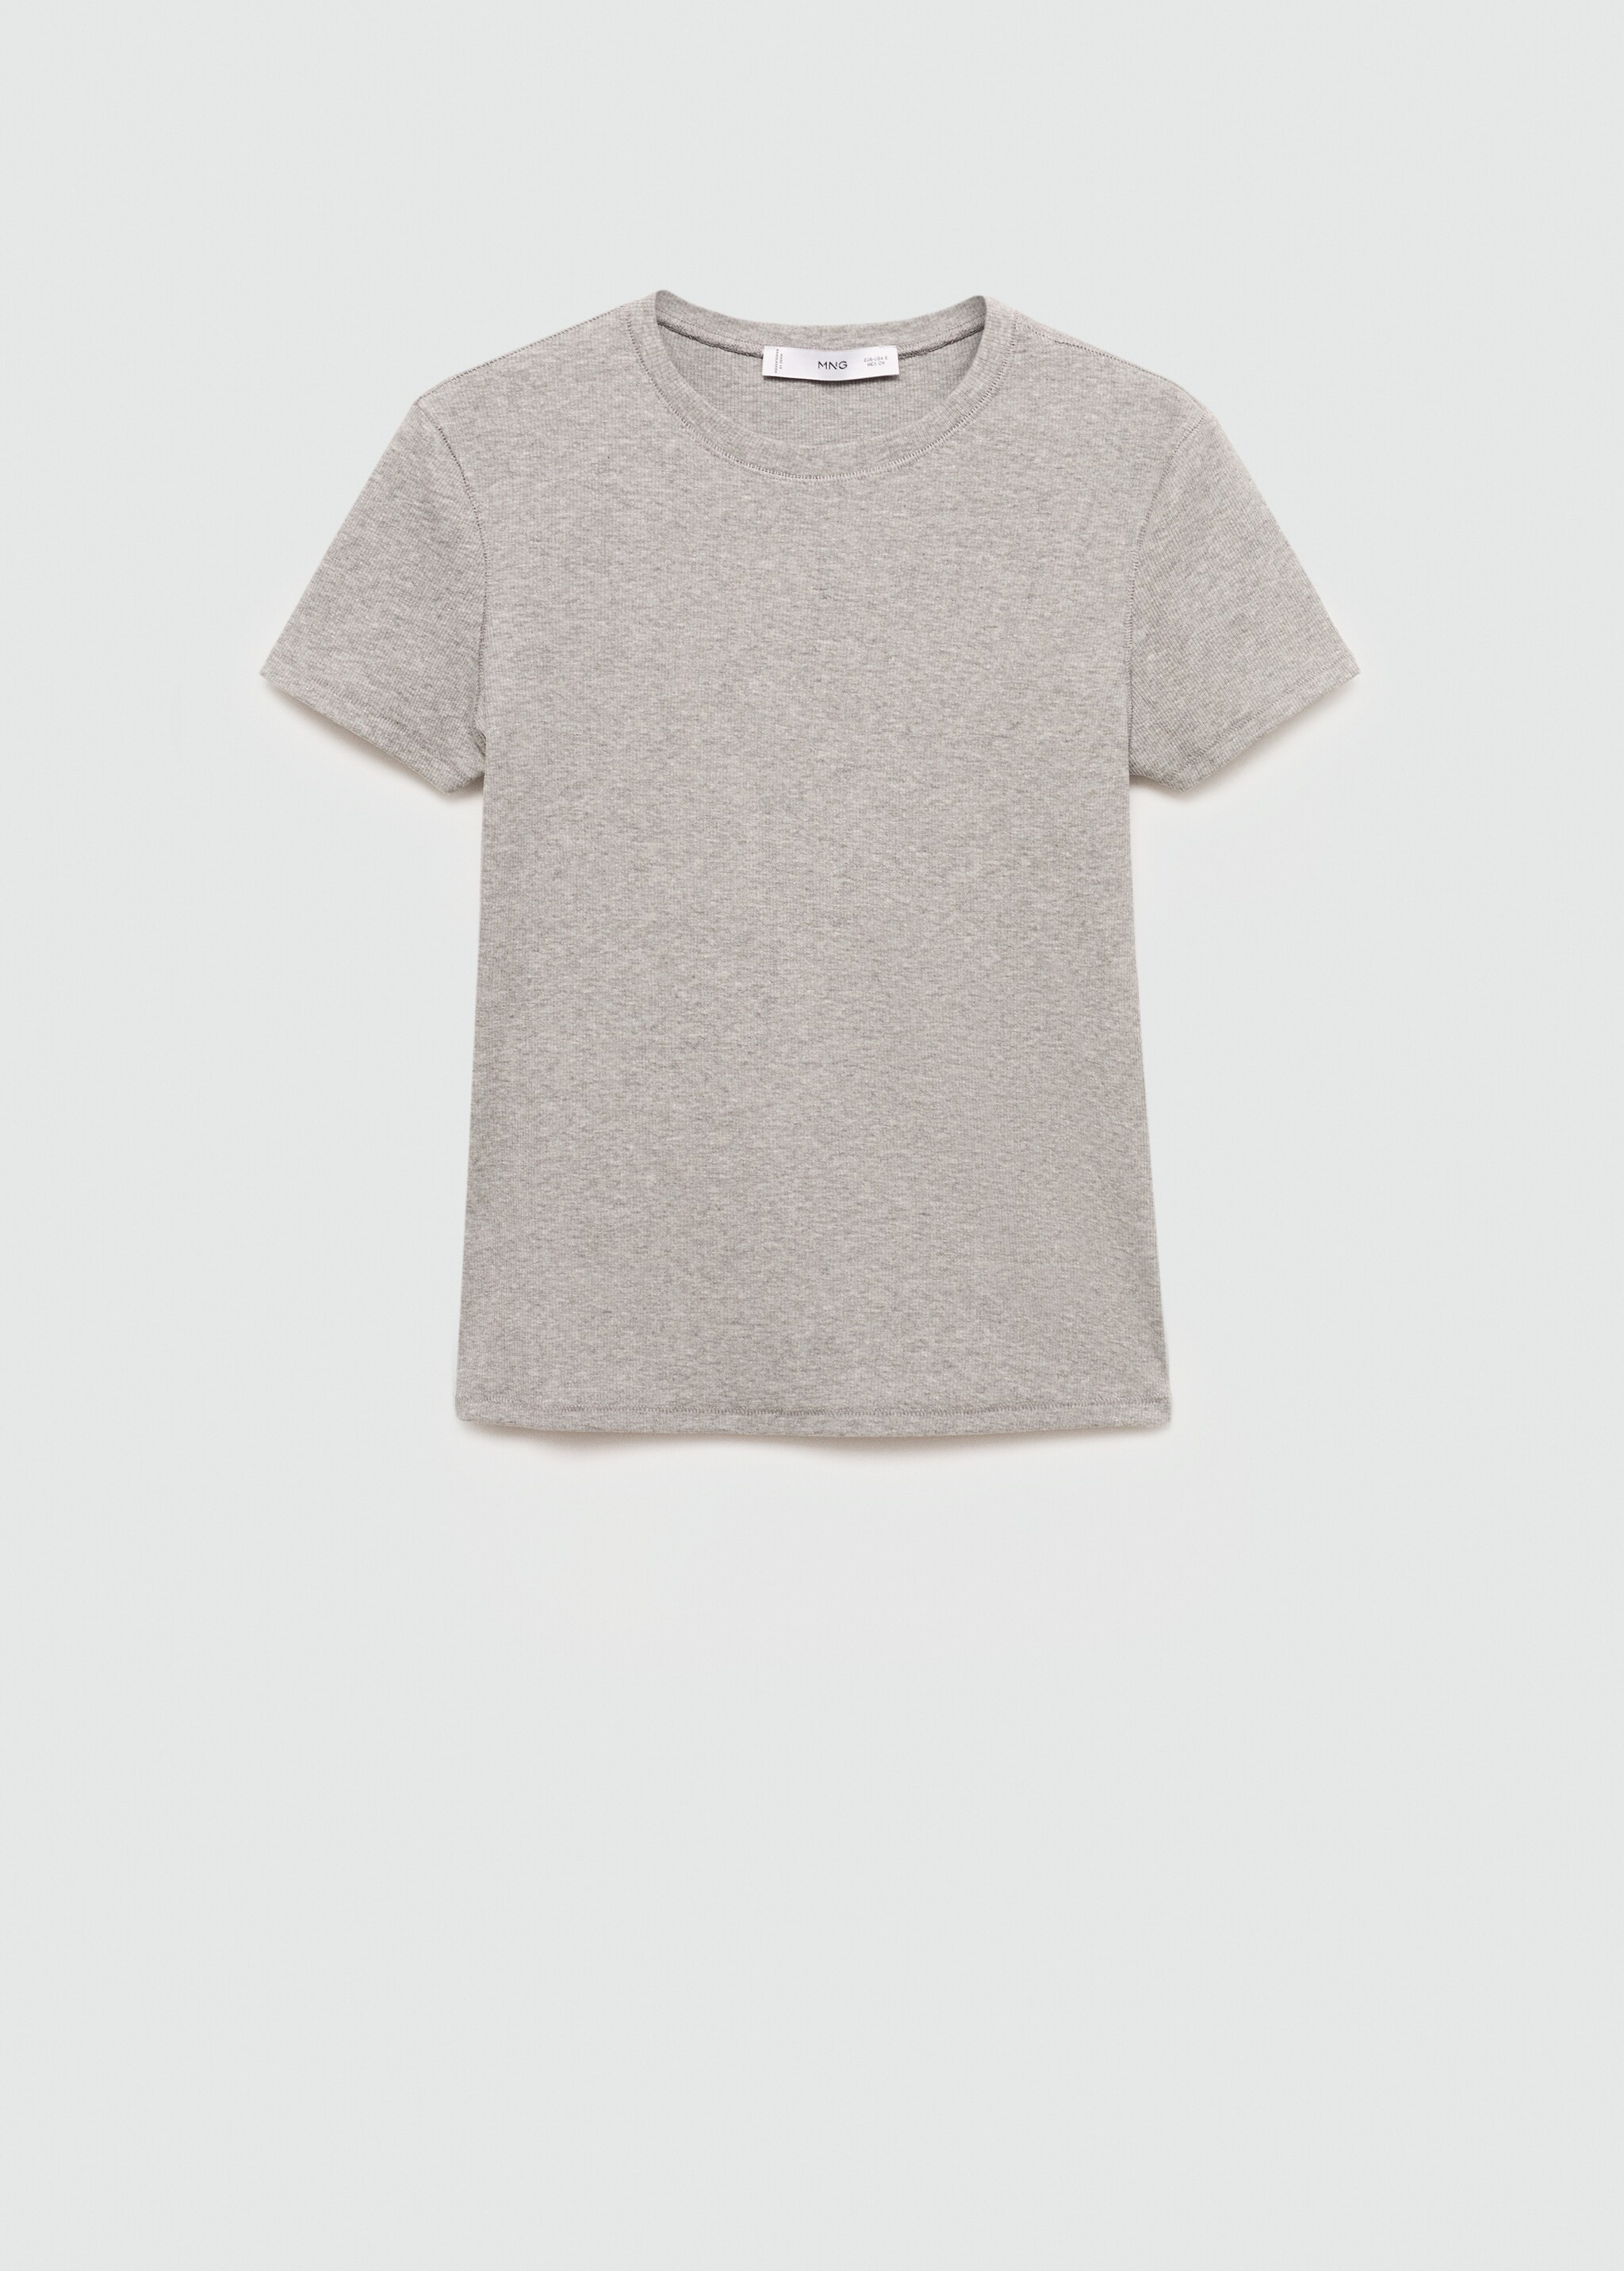 Kısa kollu triko tişört - Modelsiz ürün